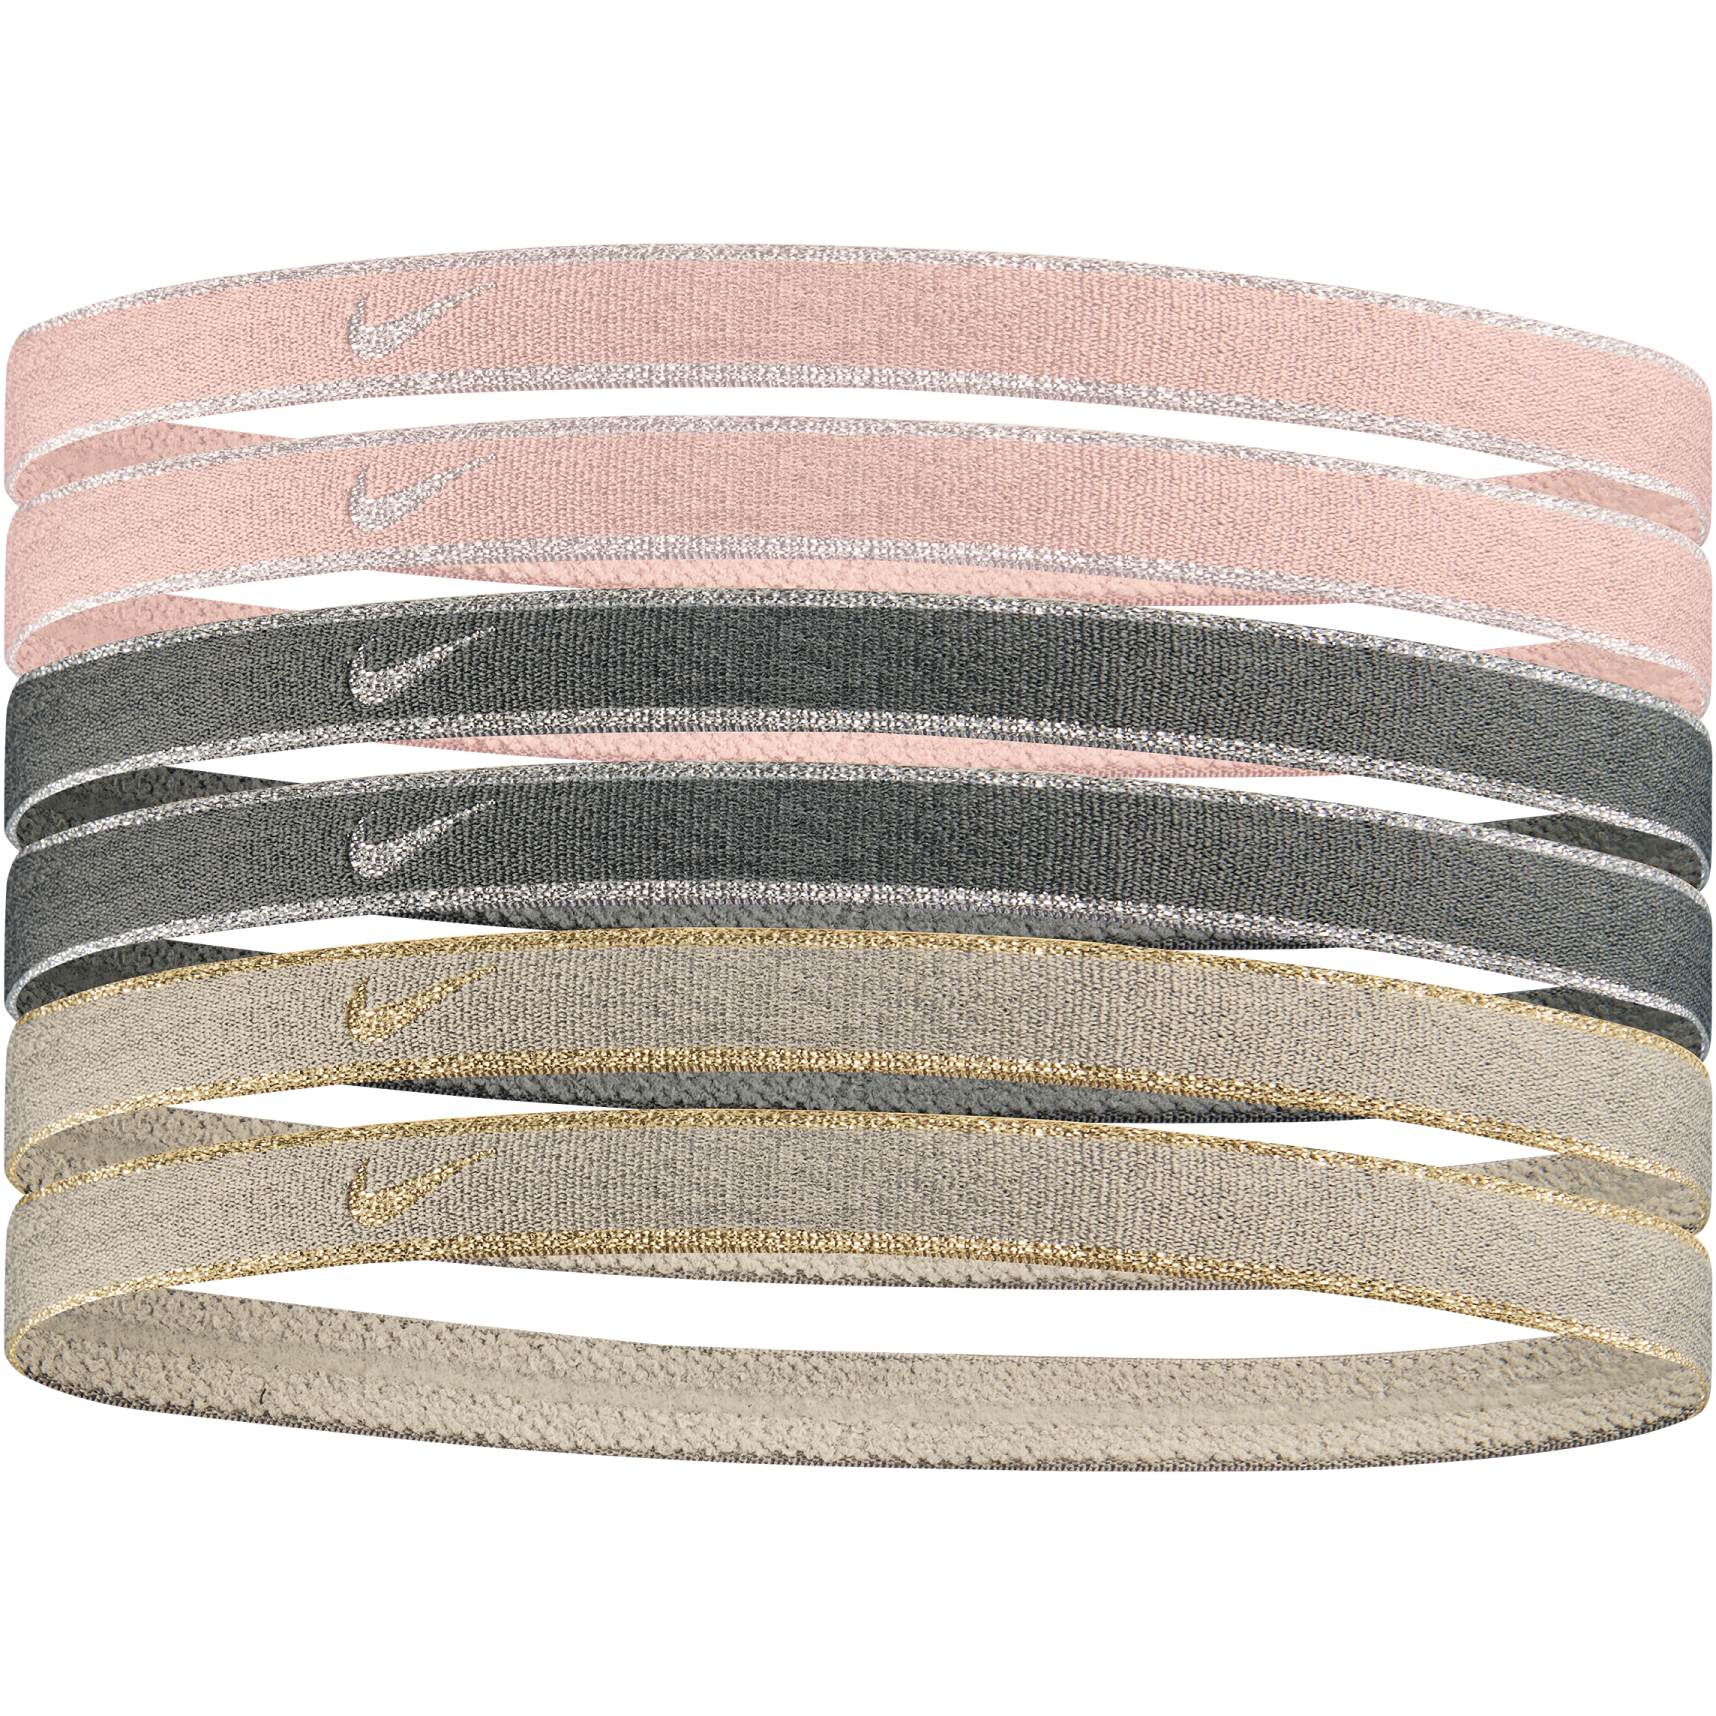 Produktbild von Nike Swoosh Sport Stirnbänder Metallic (6er-Pack) - pink oxford/black/rattan 648